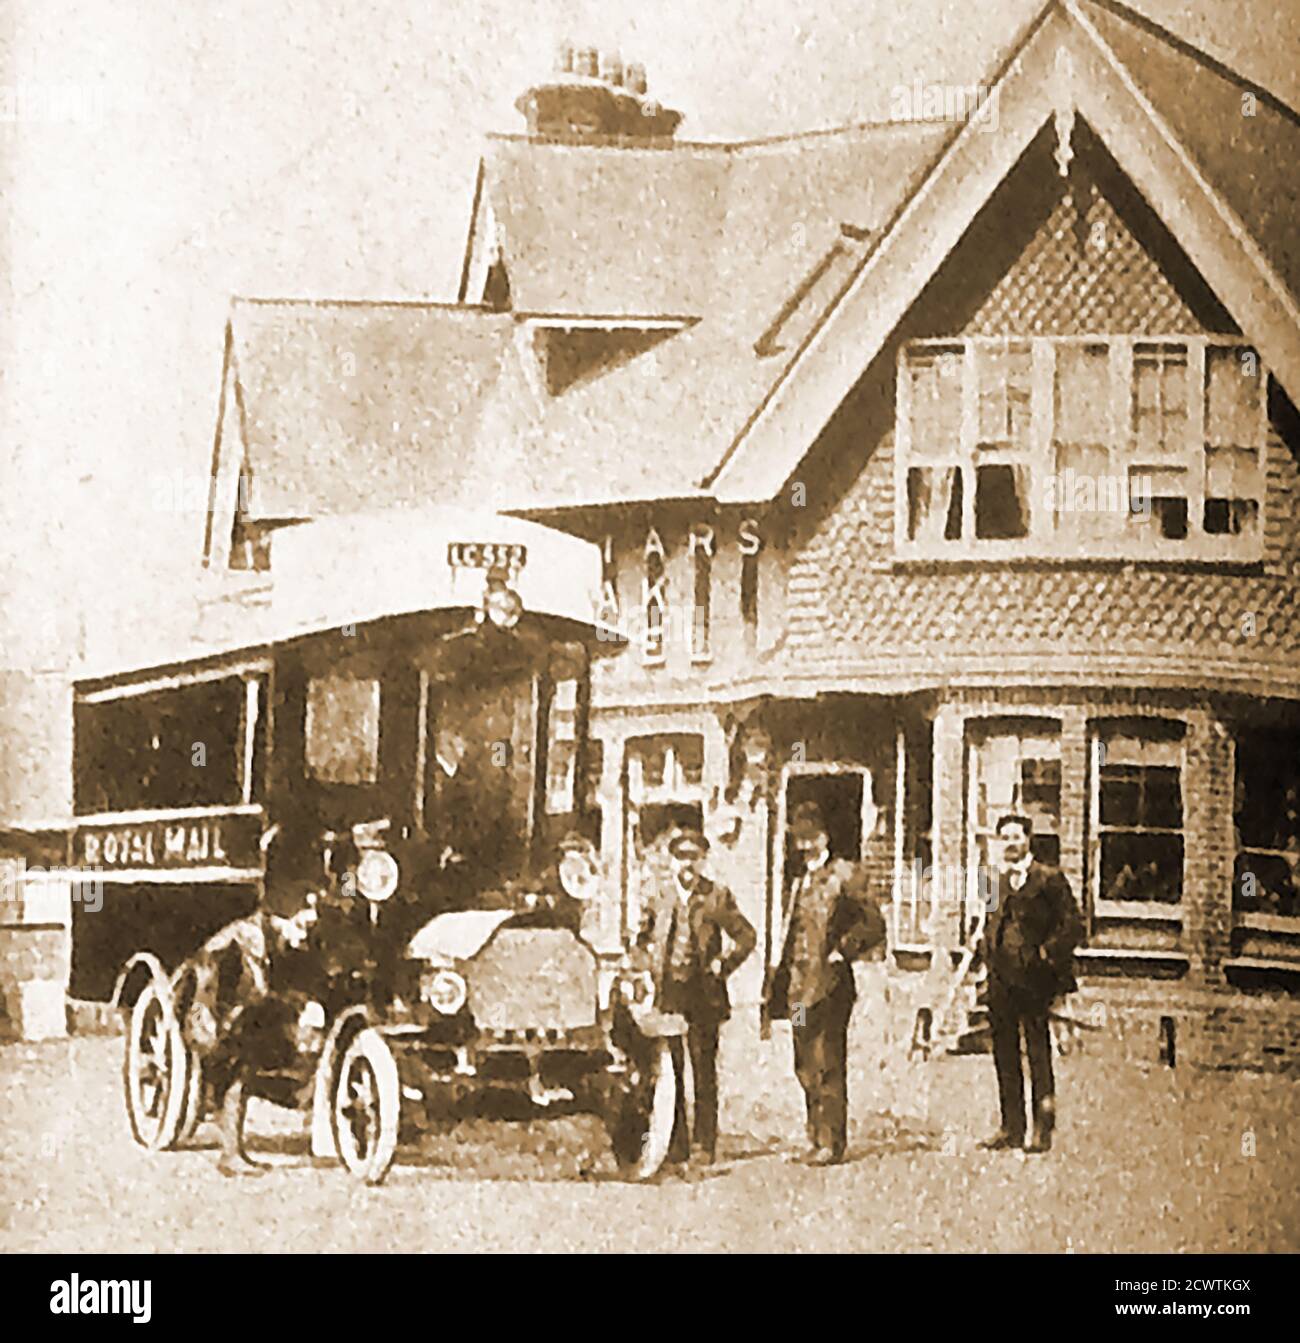 Il 2 Giugno 1905 il primo autobus della Royal Mail del Regno Unito durante il suo viaggio inaugurale all'hotel Friar's Oak, che ancora si erge come un punto di riferimento locale nel villaggio di Hassocks, West Sussex, Inghilterra. Il Friars Oak Inn è una vecchia fermata di carrozze dove i cavalli sono stati cambiati, è immediatamente adiacente al Friars Oak Fields, sul lato occidentale. Foto Stock